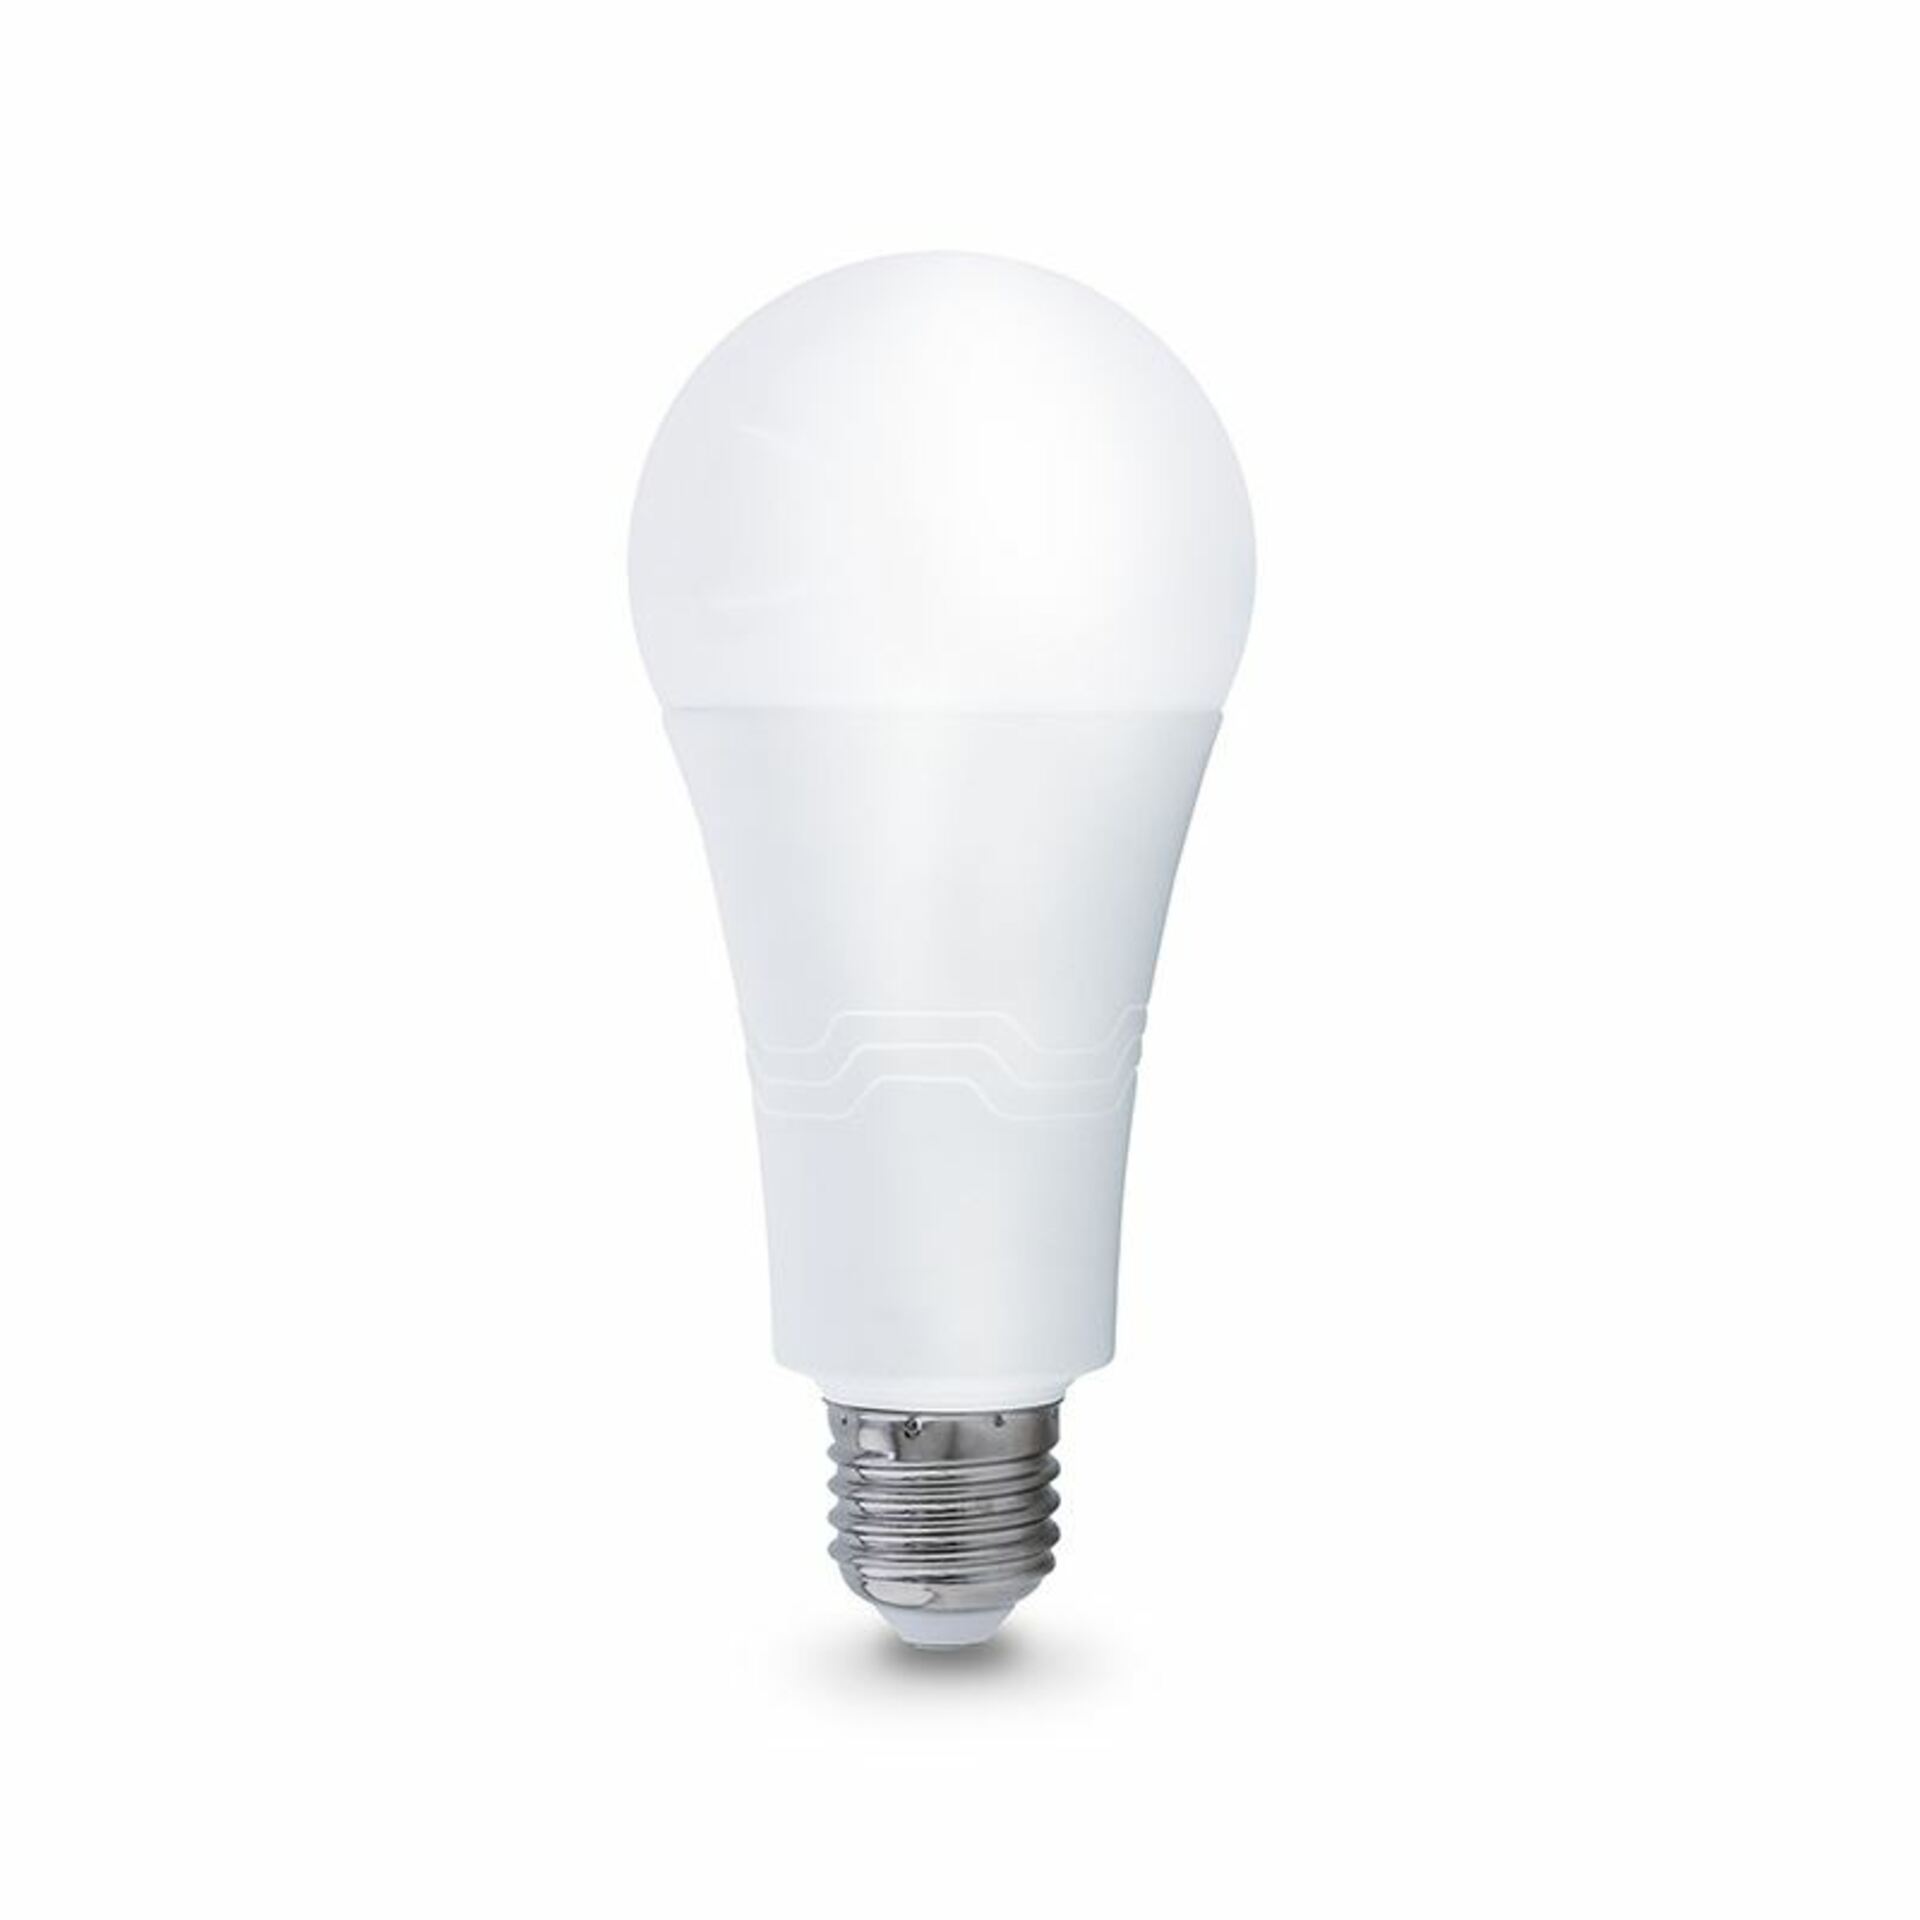 Solight LED žárovka, klasický tvar, 22W, E27, 3000K, 270°, 2090lm WZ535